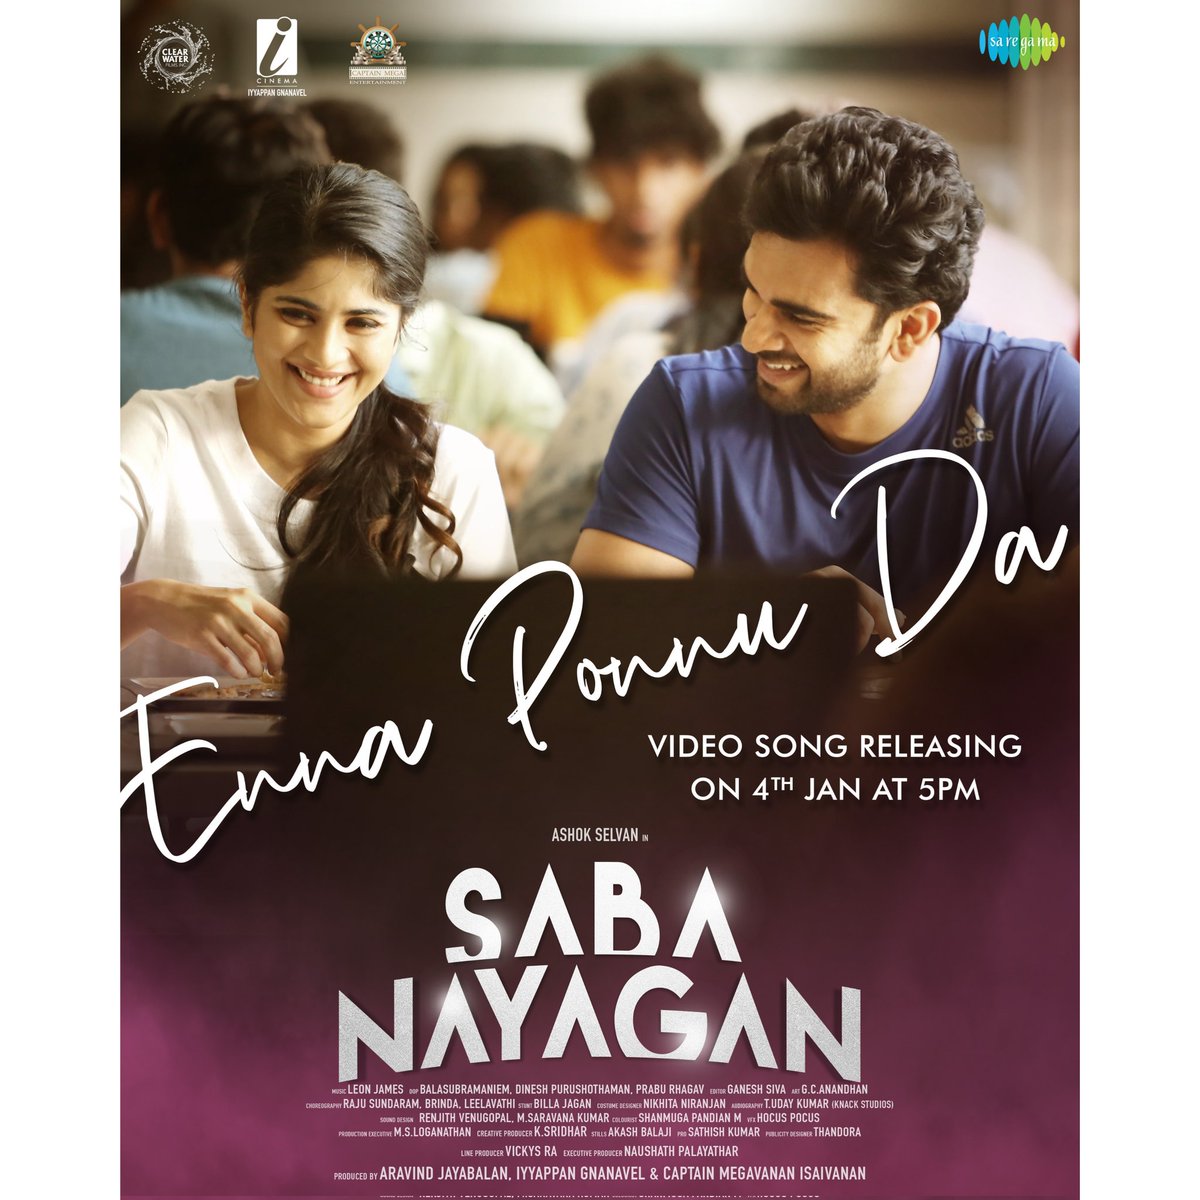 Today at 5 pm, get ready for the enchanting #ennaponnuda video song release from #sabanayagan!

#Sabanayagan Running Successfully